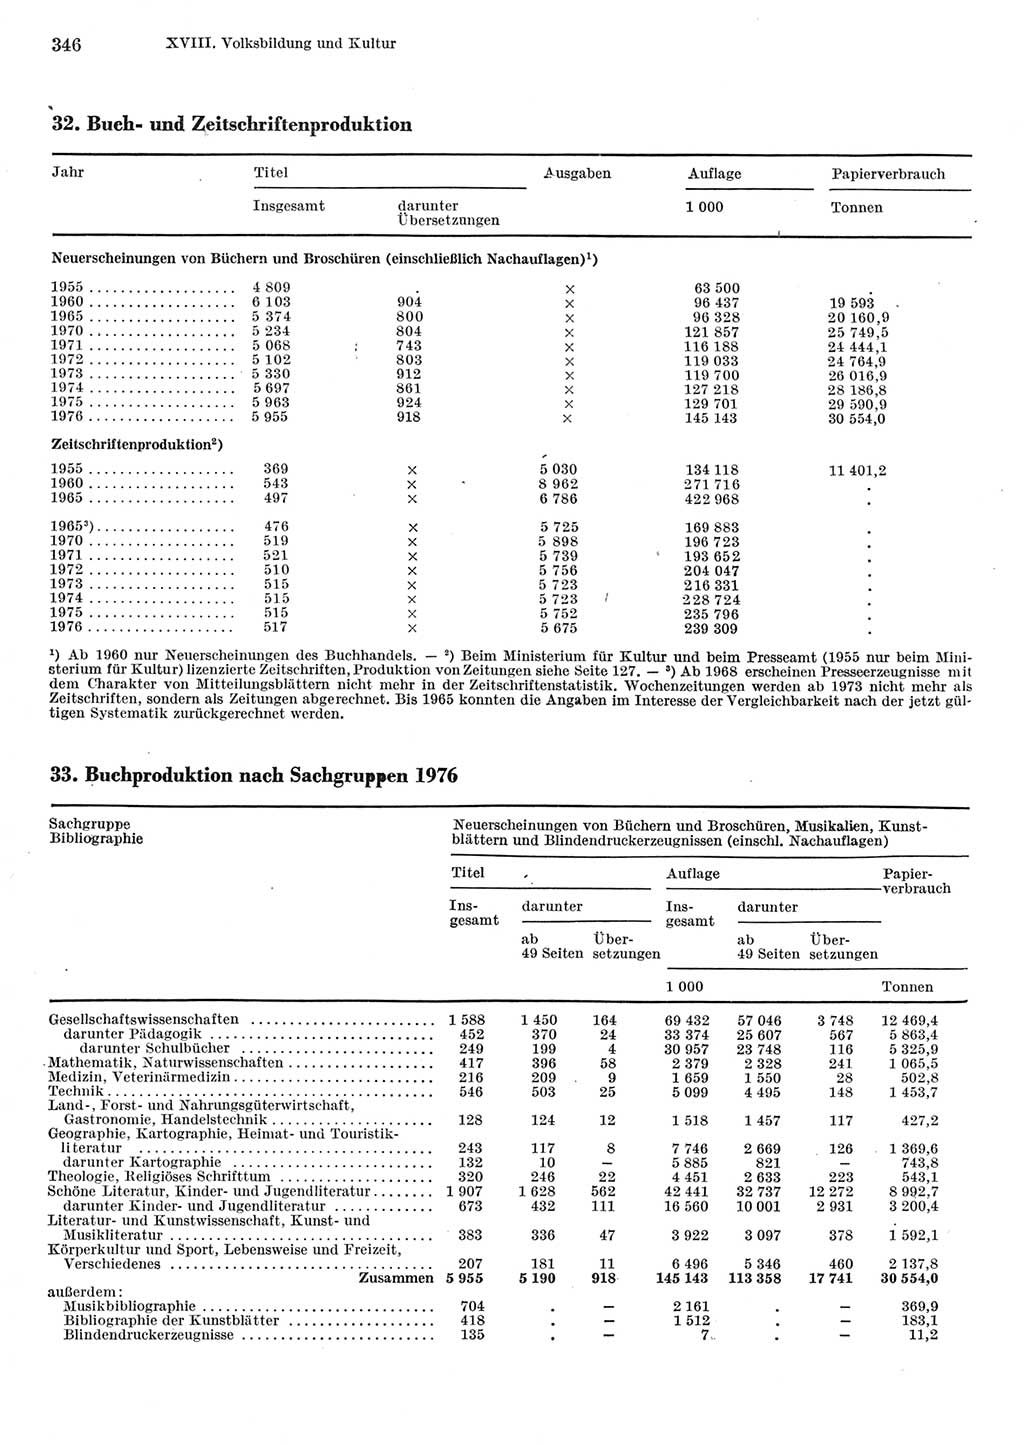 Statistisches Jahrbuch der Deutschen Demokratischen Republik (DDR) 1977, Seite 346 (Stat. Jb. DDR 1977, S. 346)